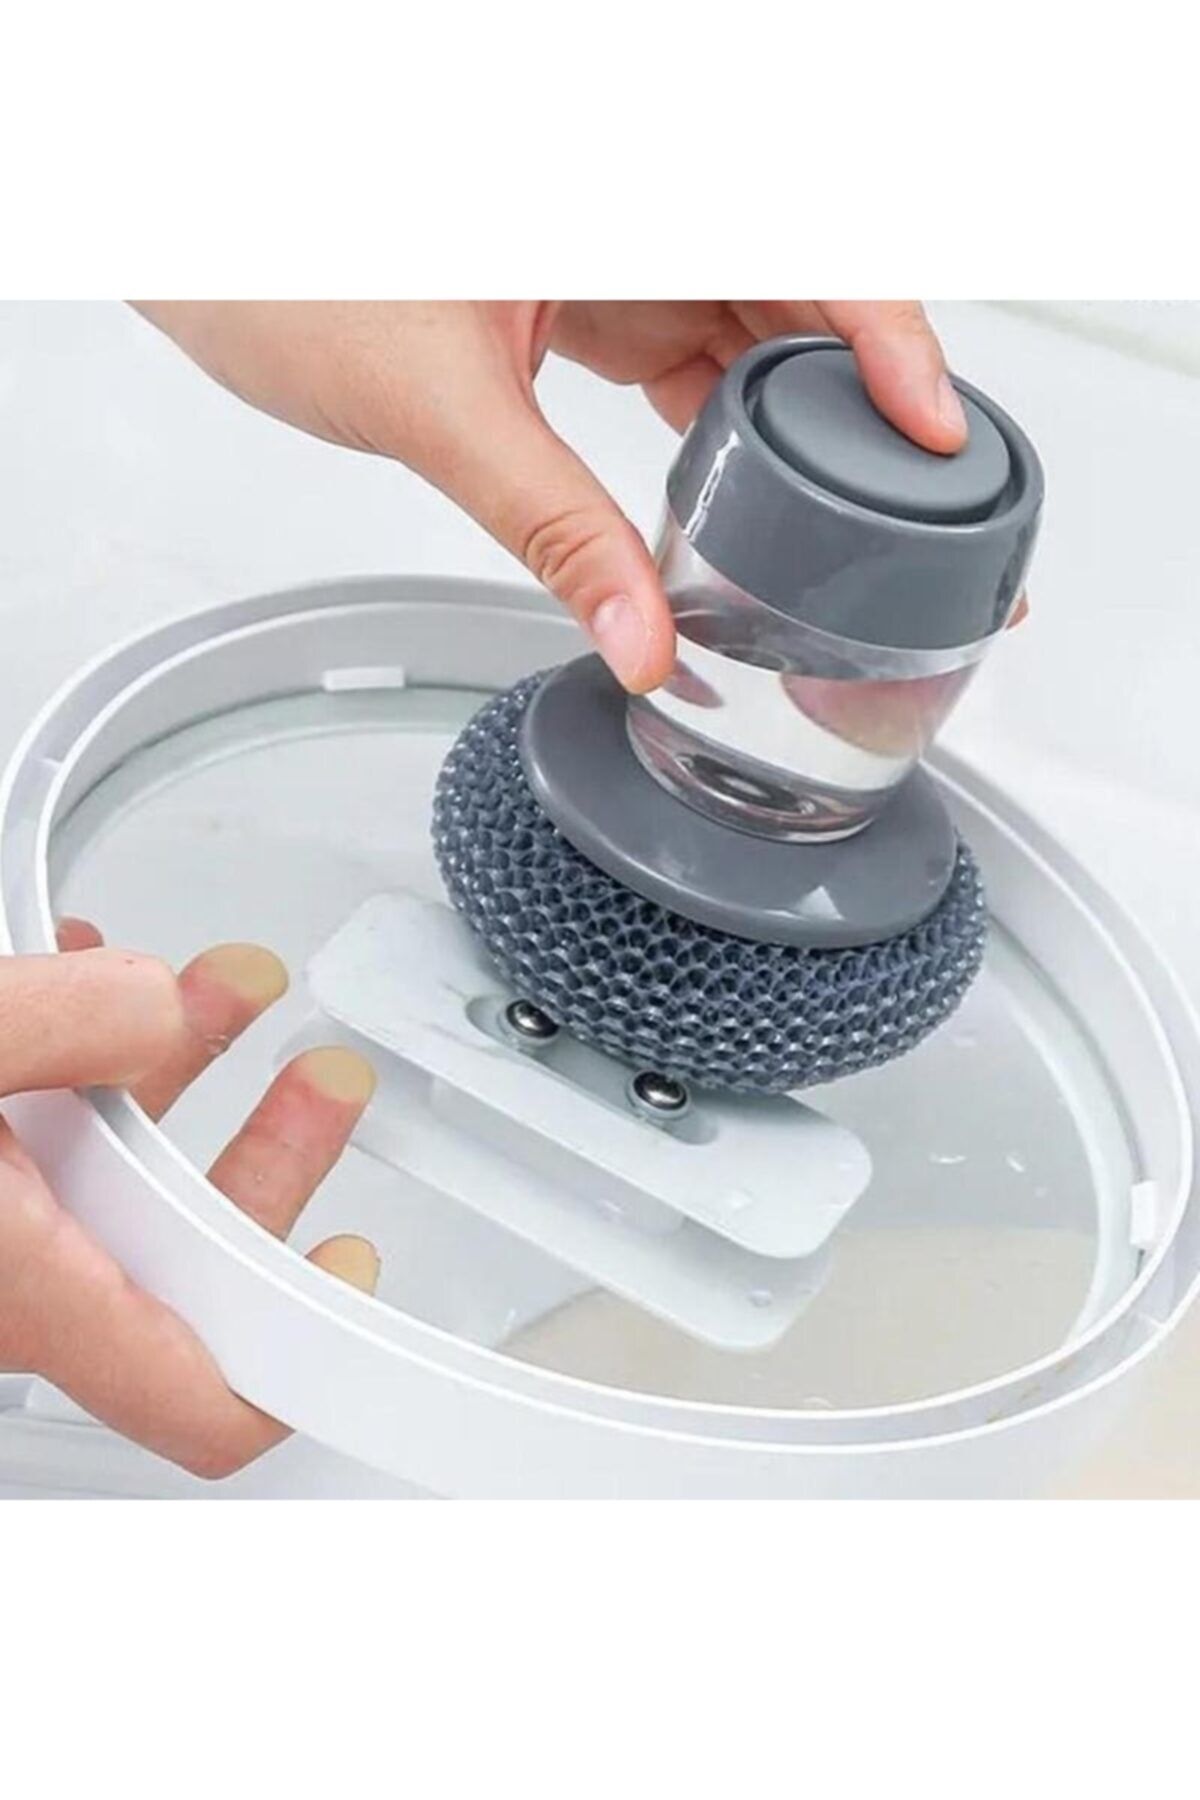 TechnoSmart Deterjan Hazneli Bulaşık Yıkama Süngeri Pratik Temizleme Süngeri Banyo Lavabo